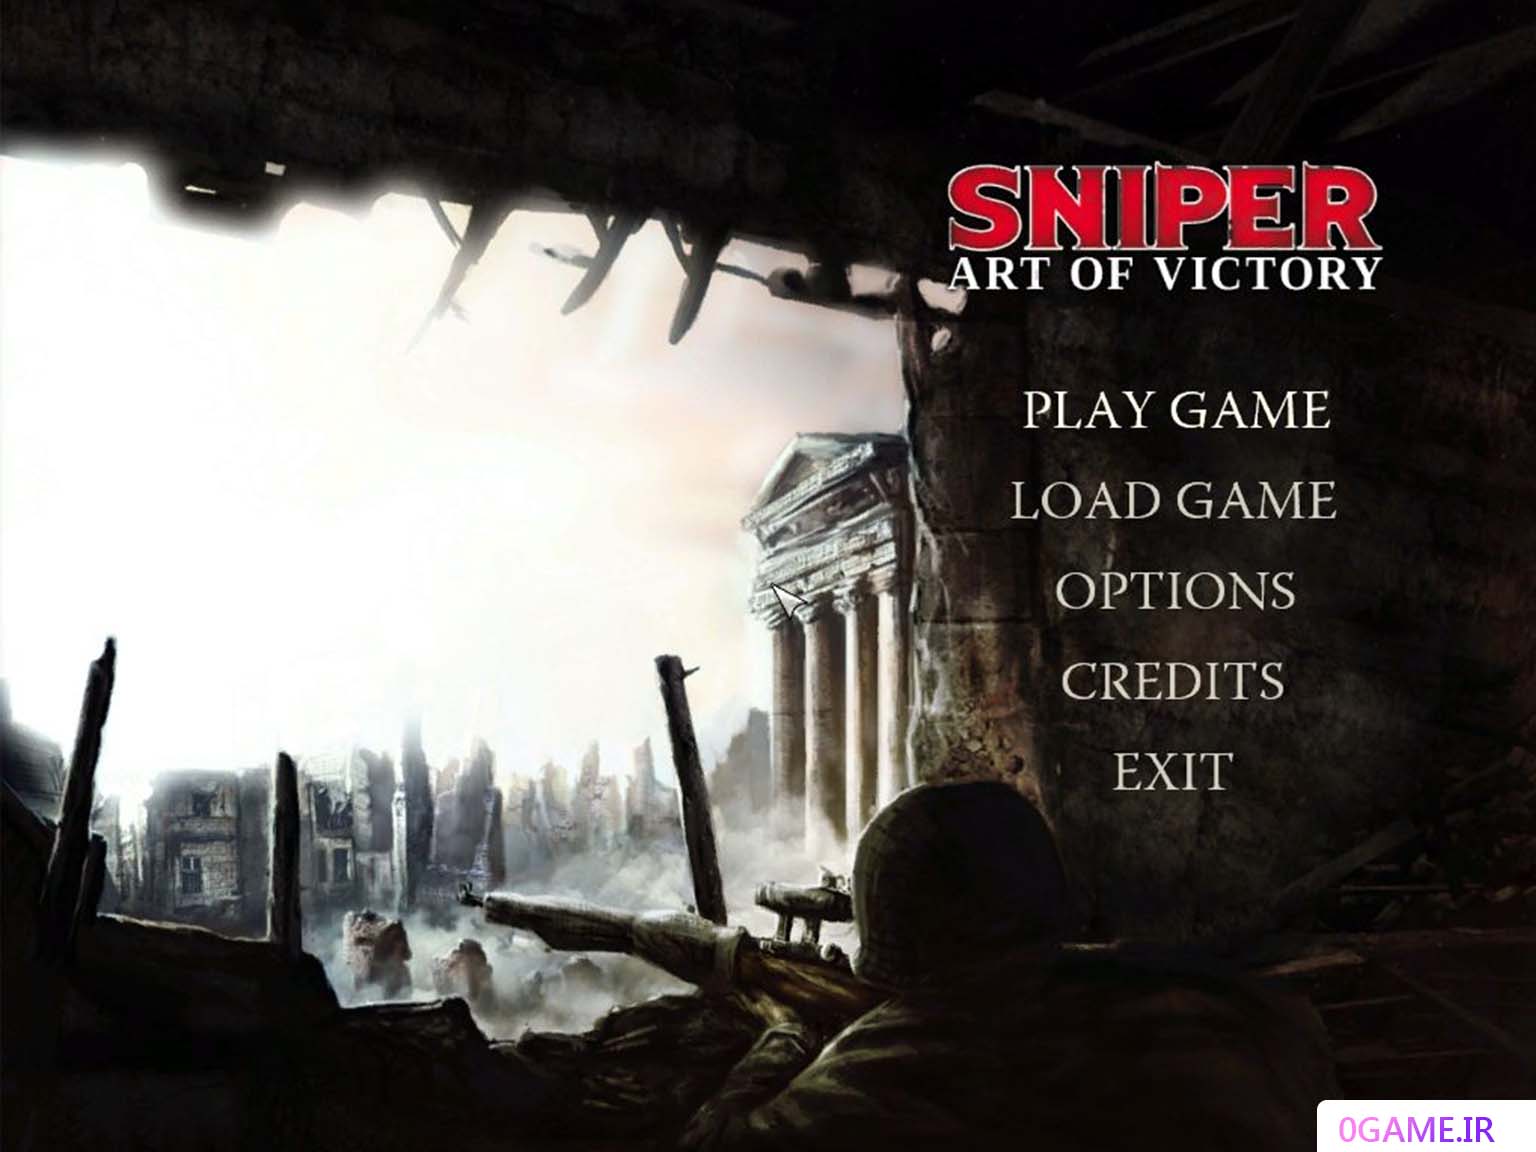 دانلود بازی تک تیرانداز هنر (Sniper: Art of Victory) نسخه کامل برای کامپیوتر